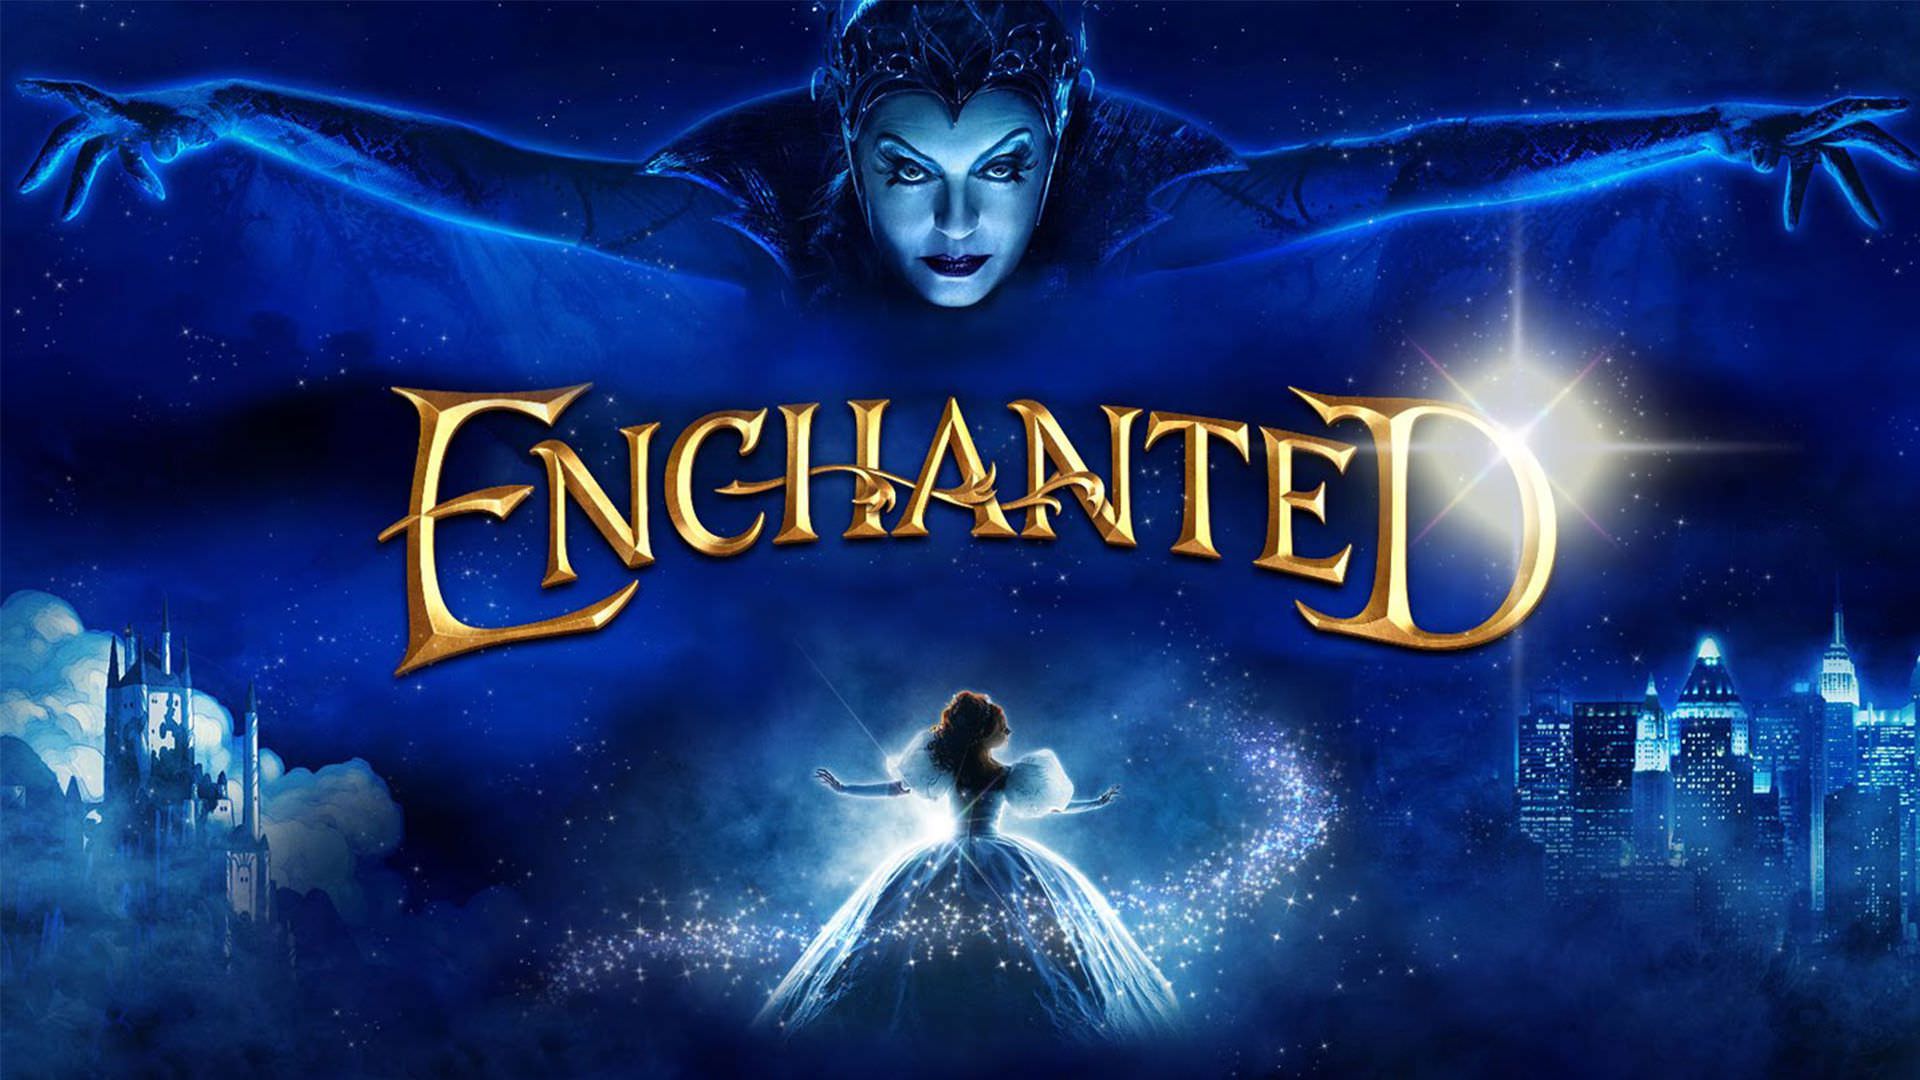 پیوستن سه بازیگر جدید به دنباله فیلم Enchanted برای بازی در نقش منفی